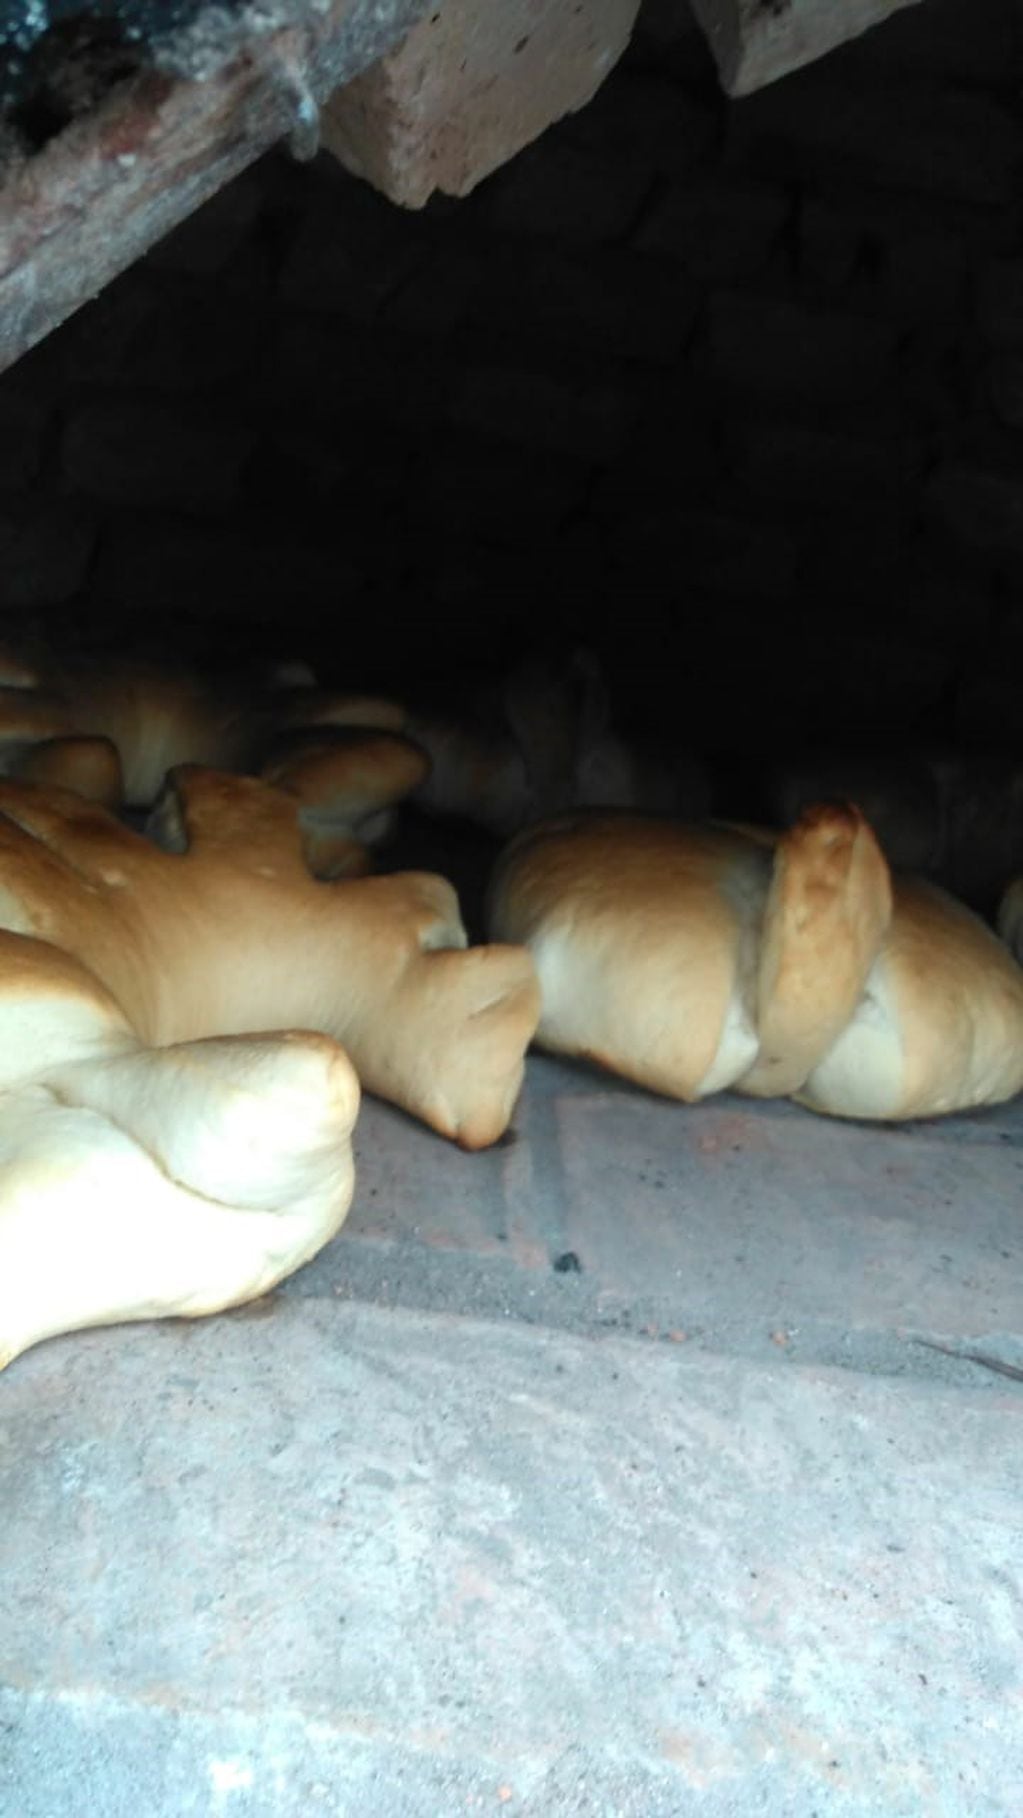 Los panes a punto de ser sacados del horno.